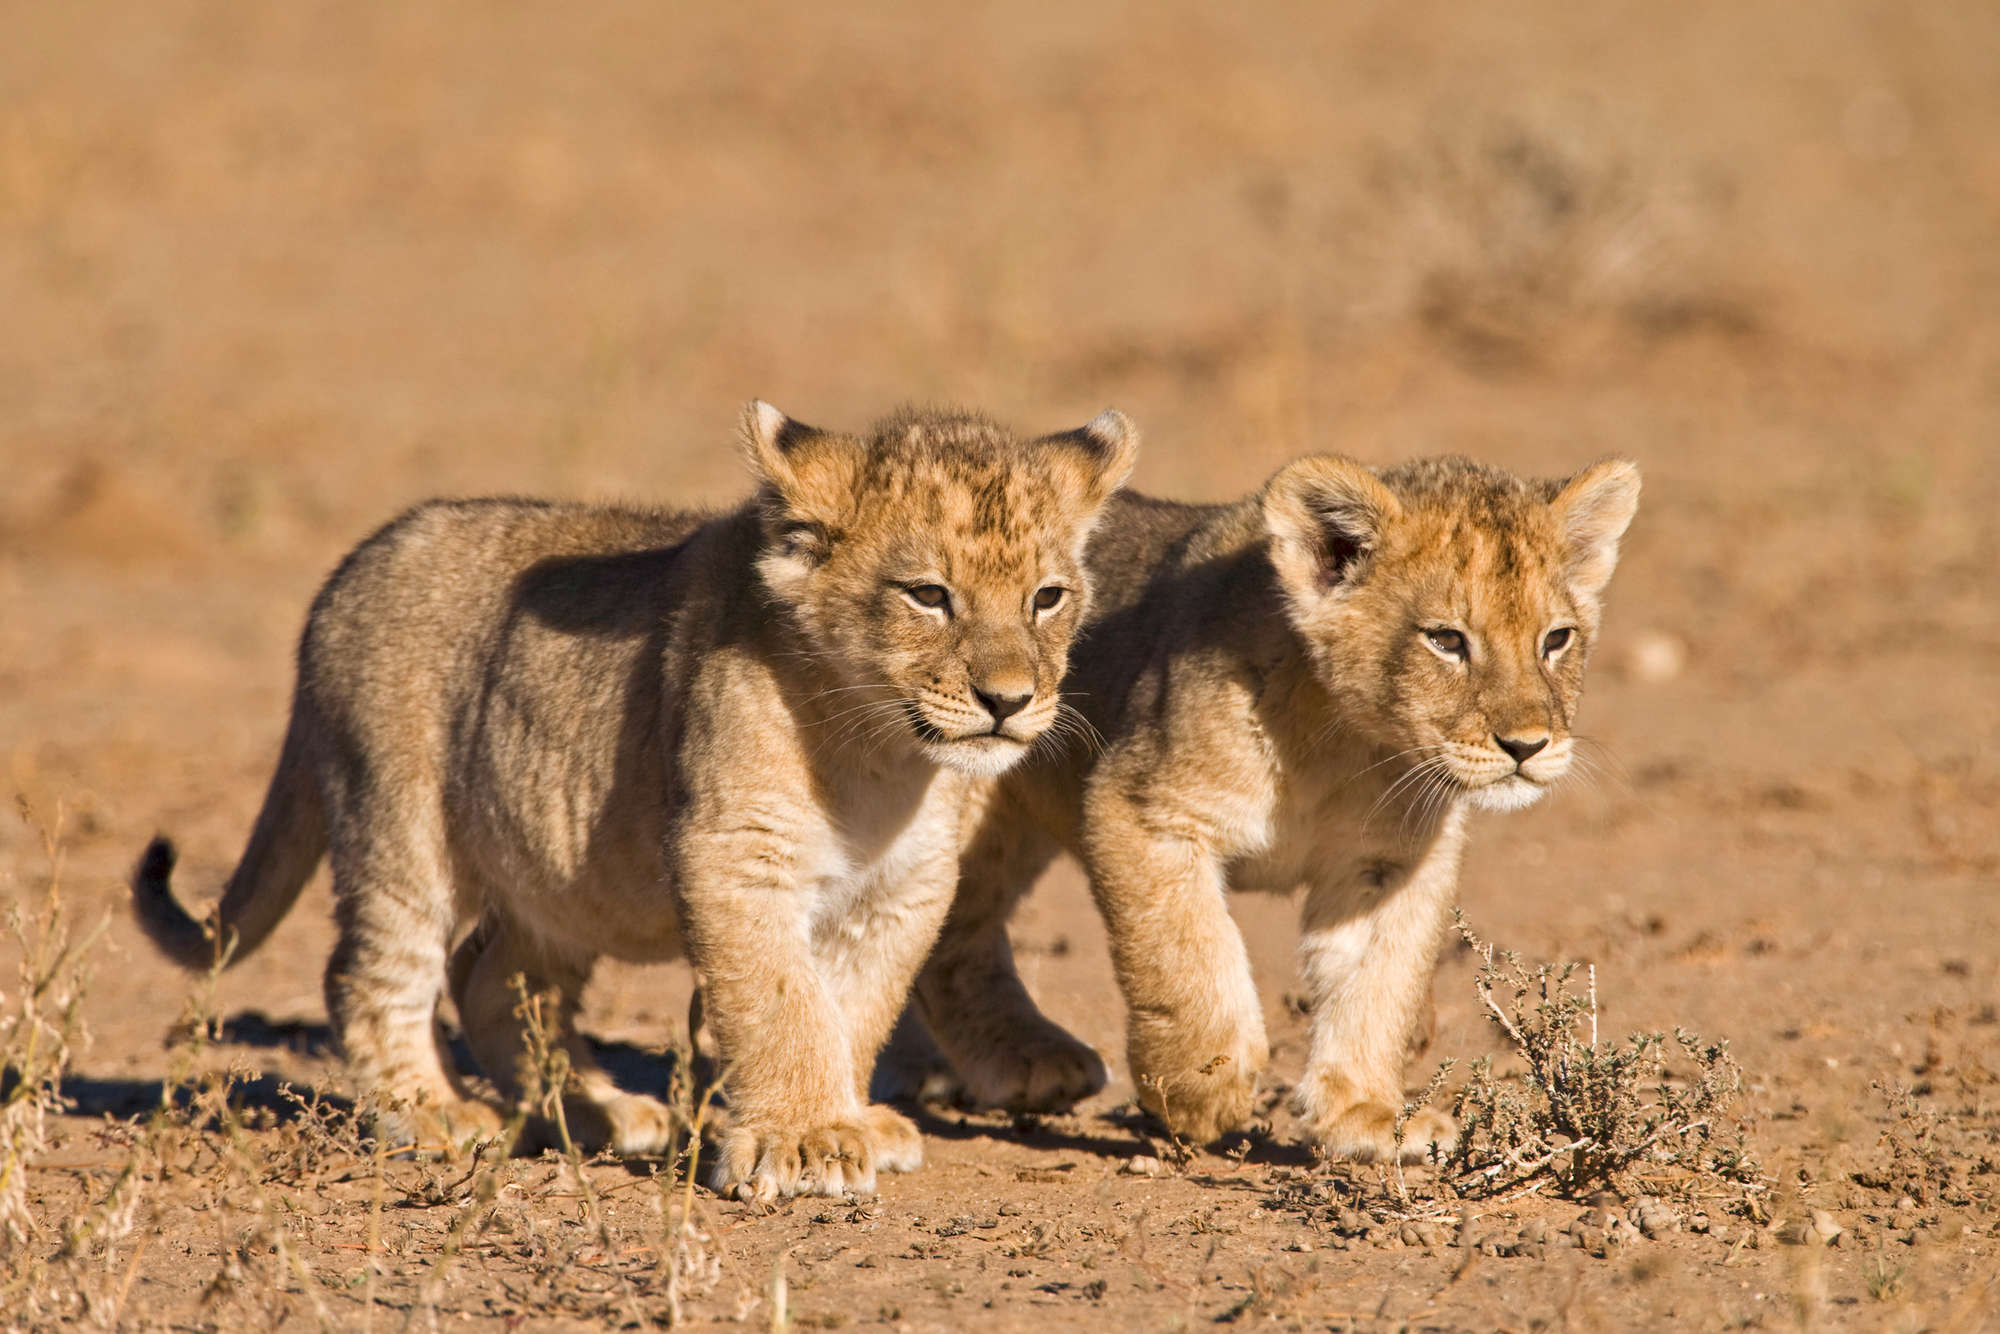             Löwen Fototapete mit zwei Jungen in Freiheit auf Strukturvlies
        